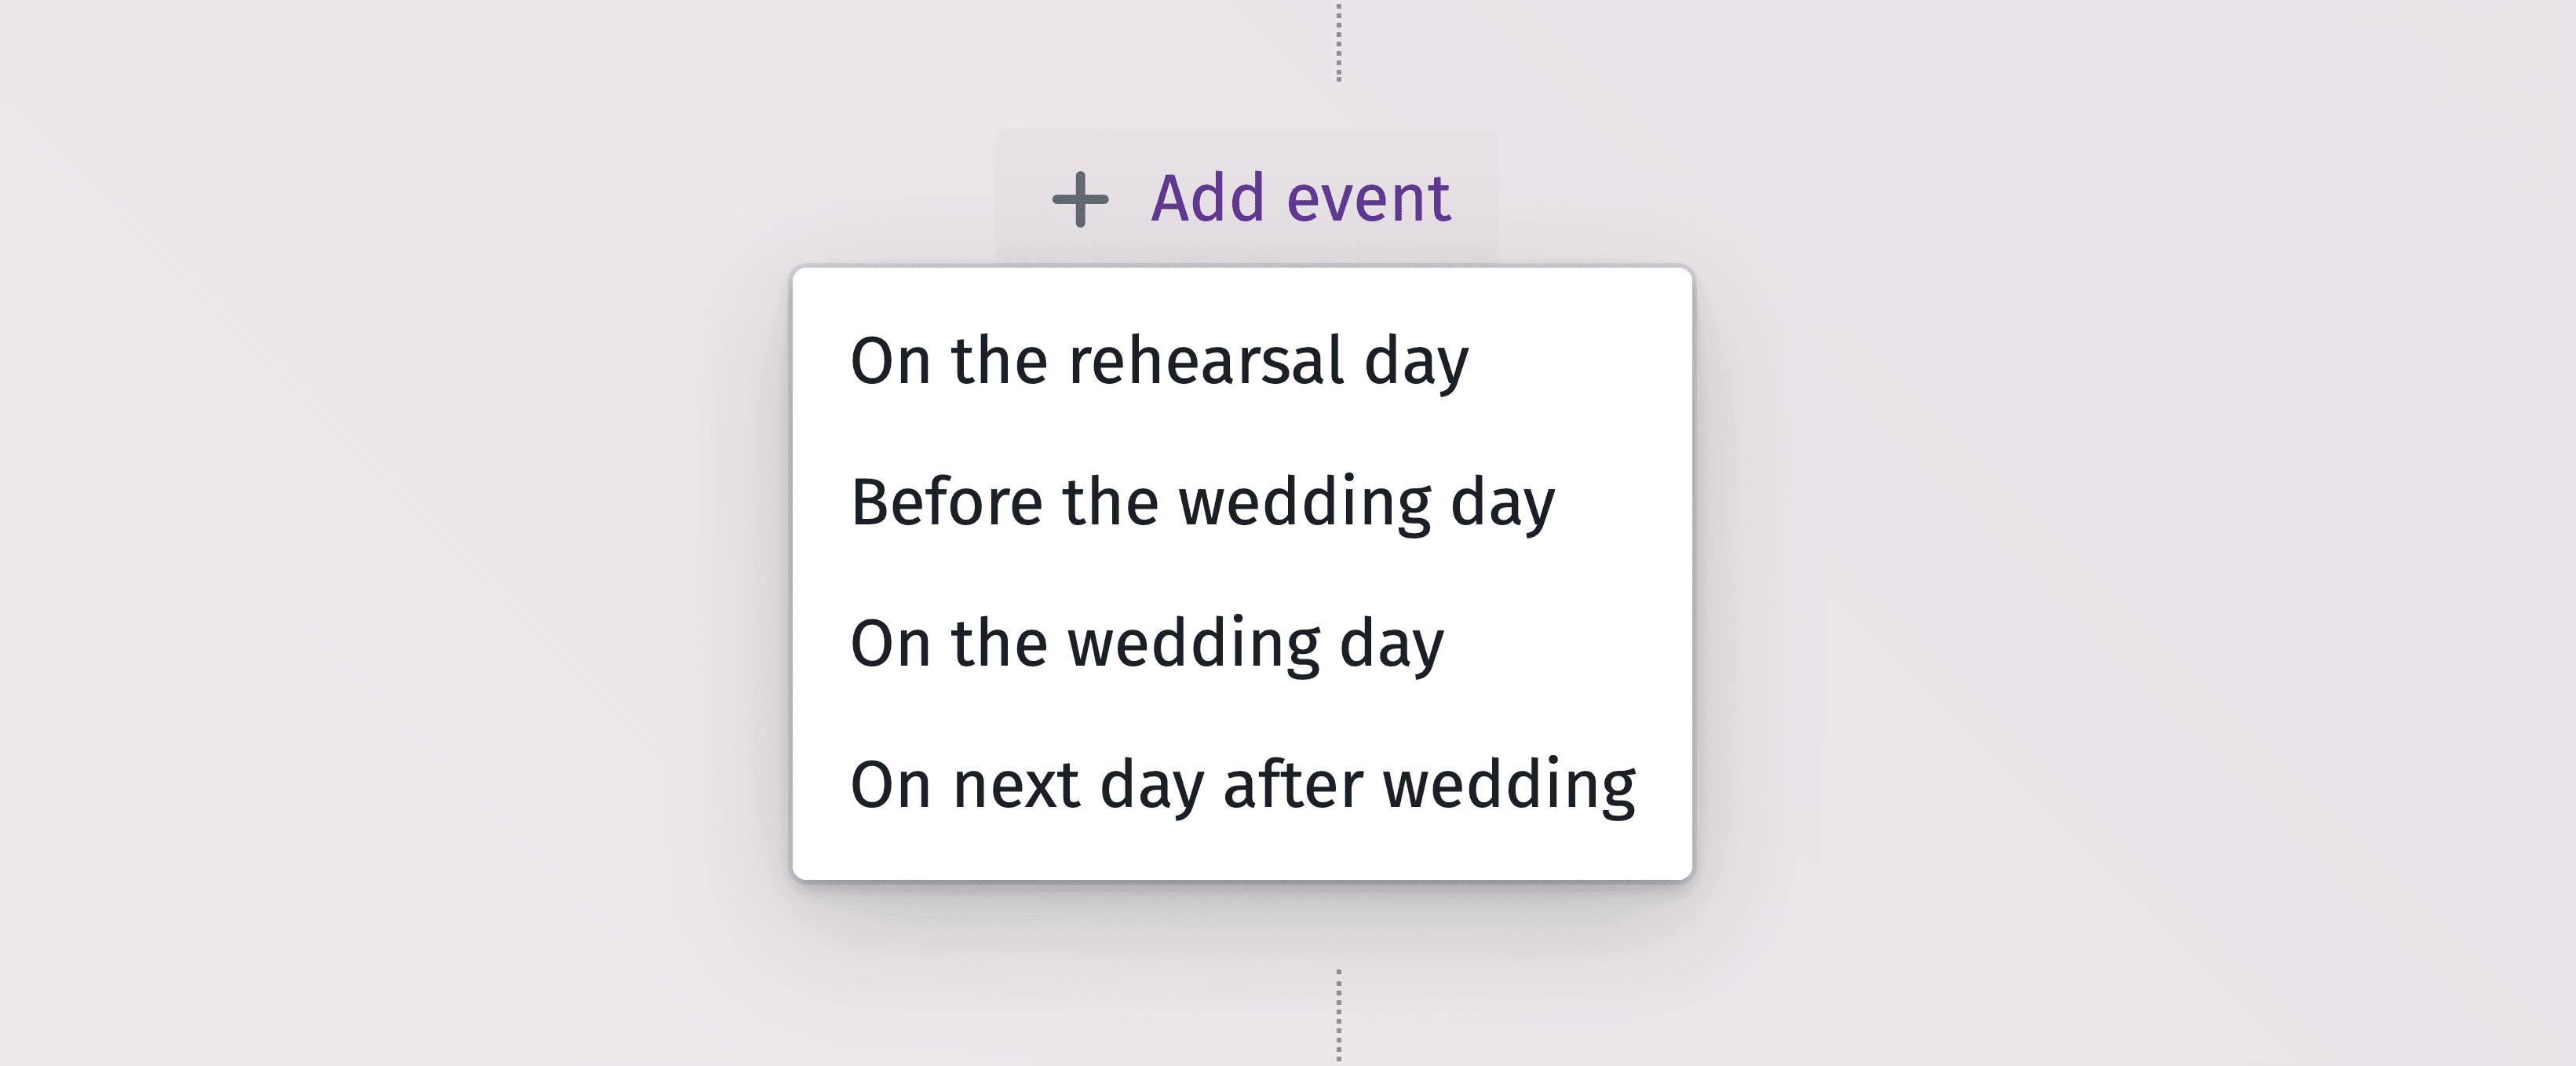 Graphique détaillé de la chronologie pour planifier efficacement chaque moment de votre journée de mariage